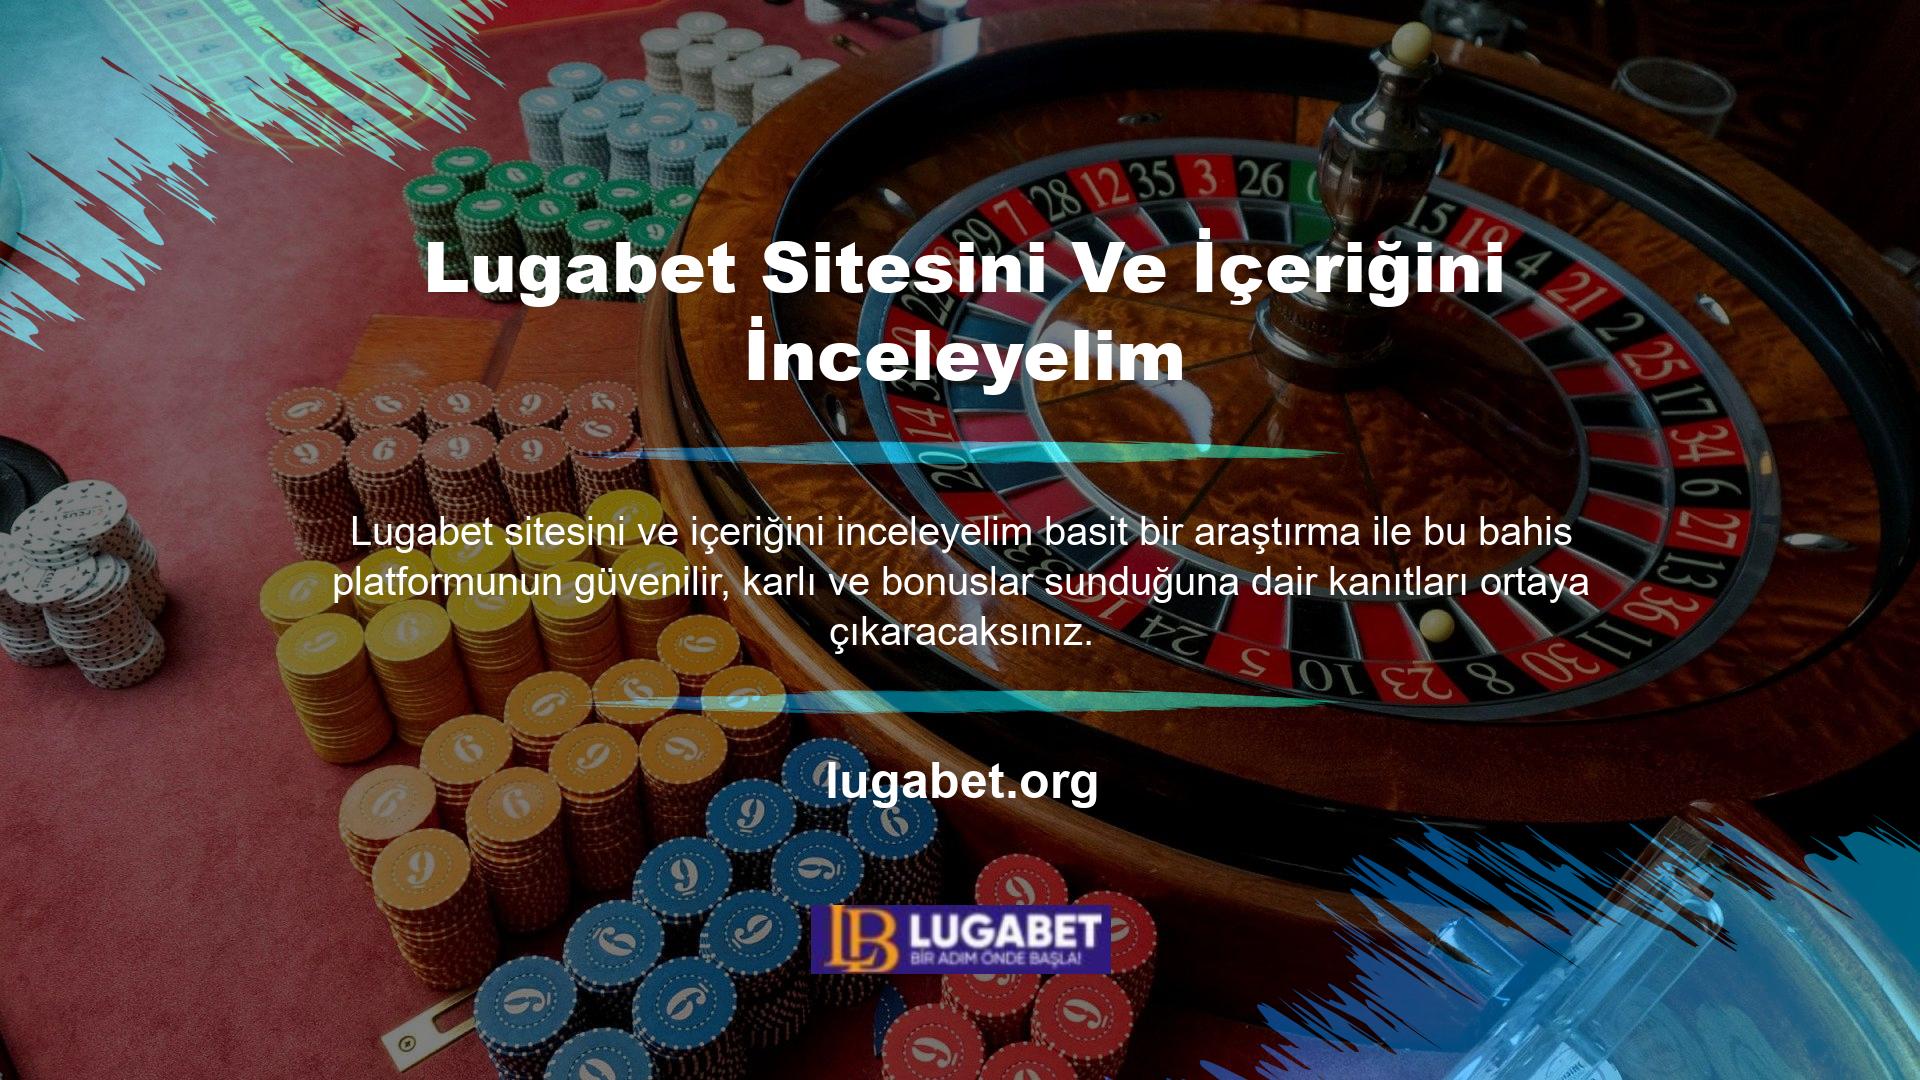 Aynı zamanda Türkiye pazarına hitap eden bir web sitesi olarak da kendisini sizlere sunmaktadır